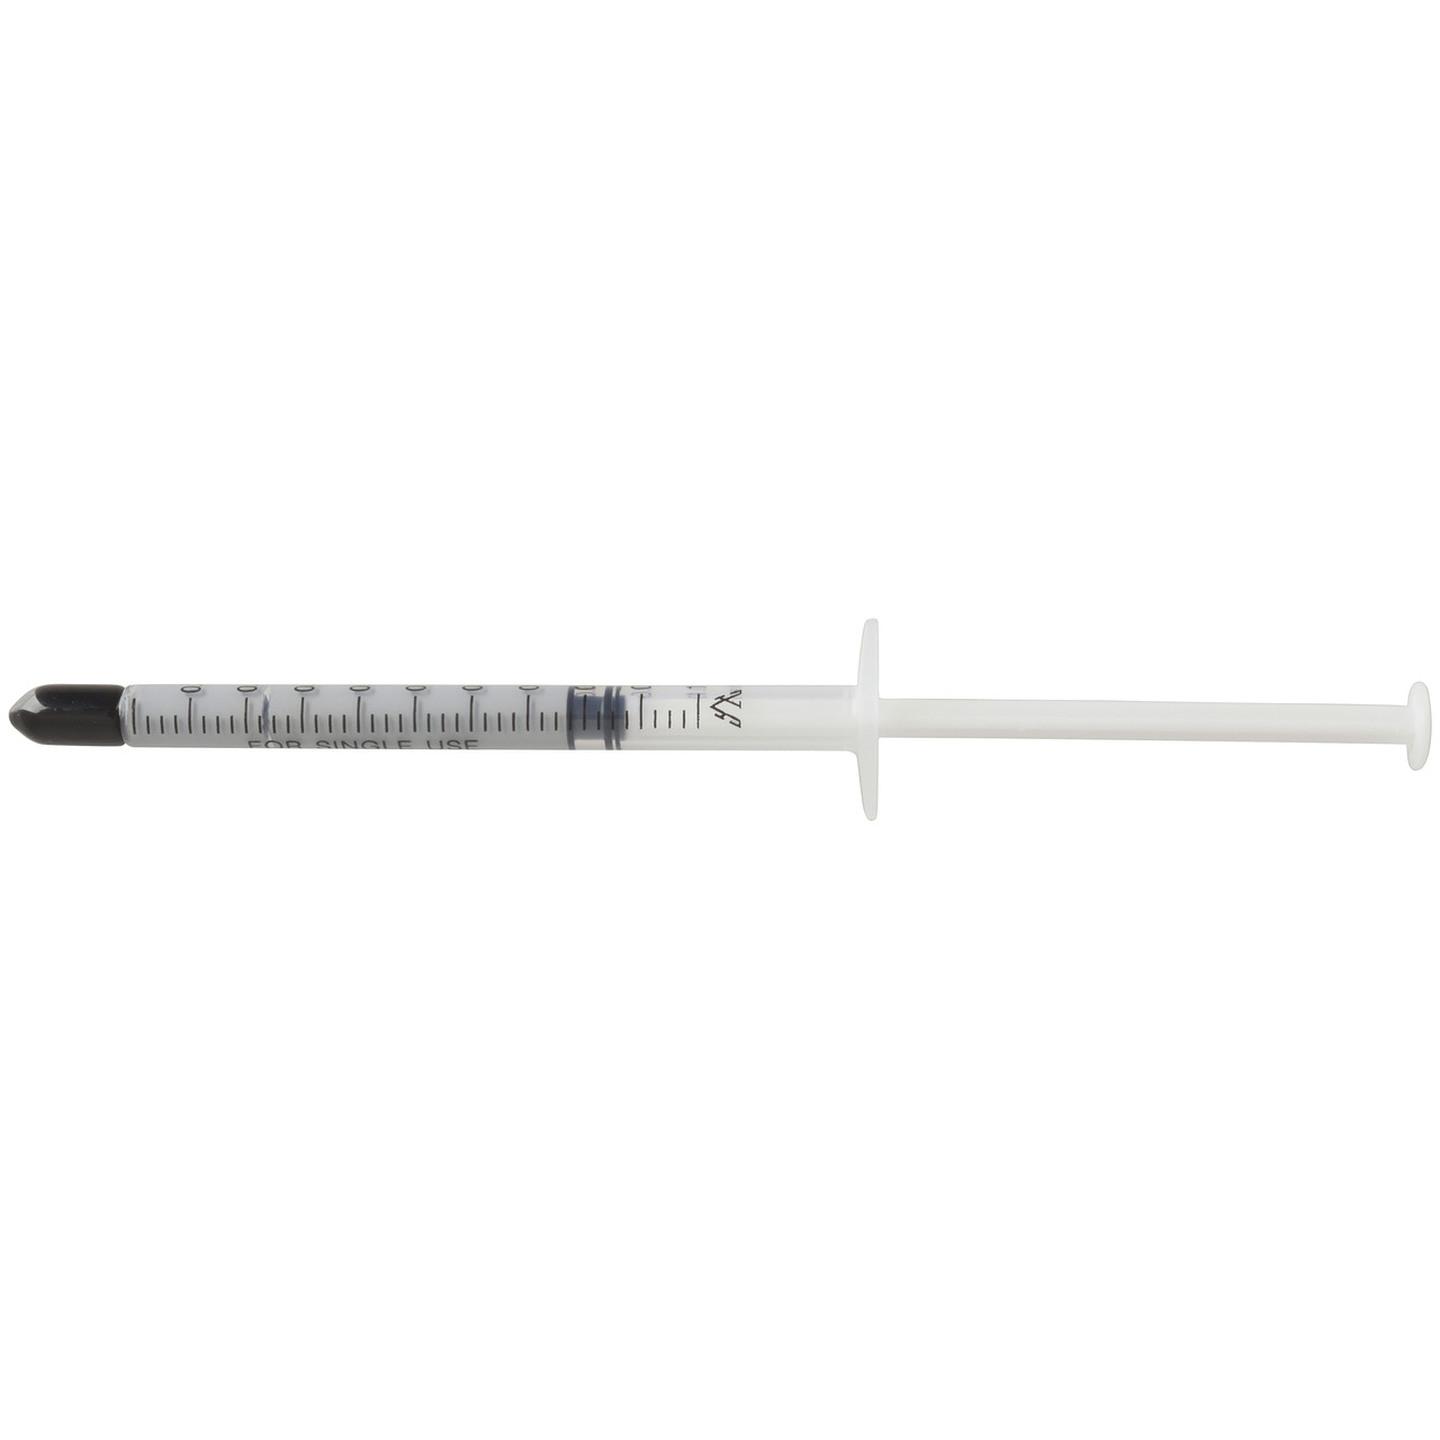 Heatsink Compound - 3g Syringe with Applicator